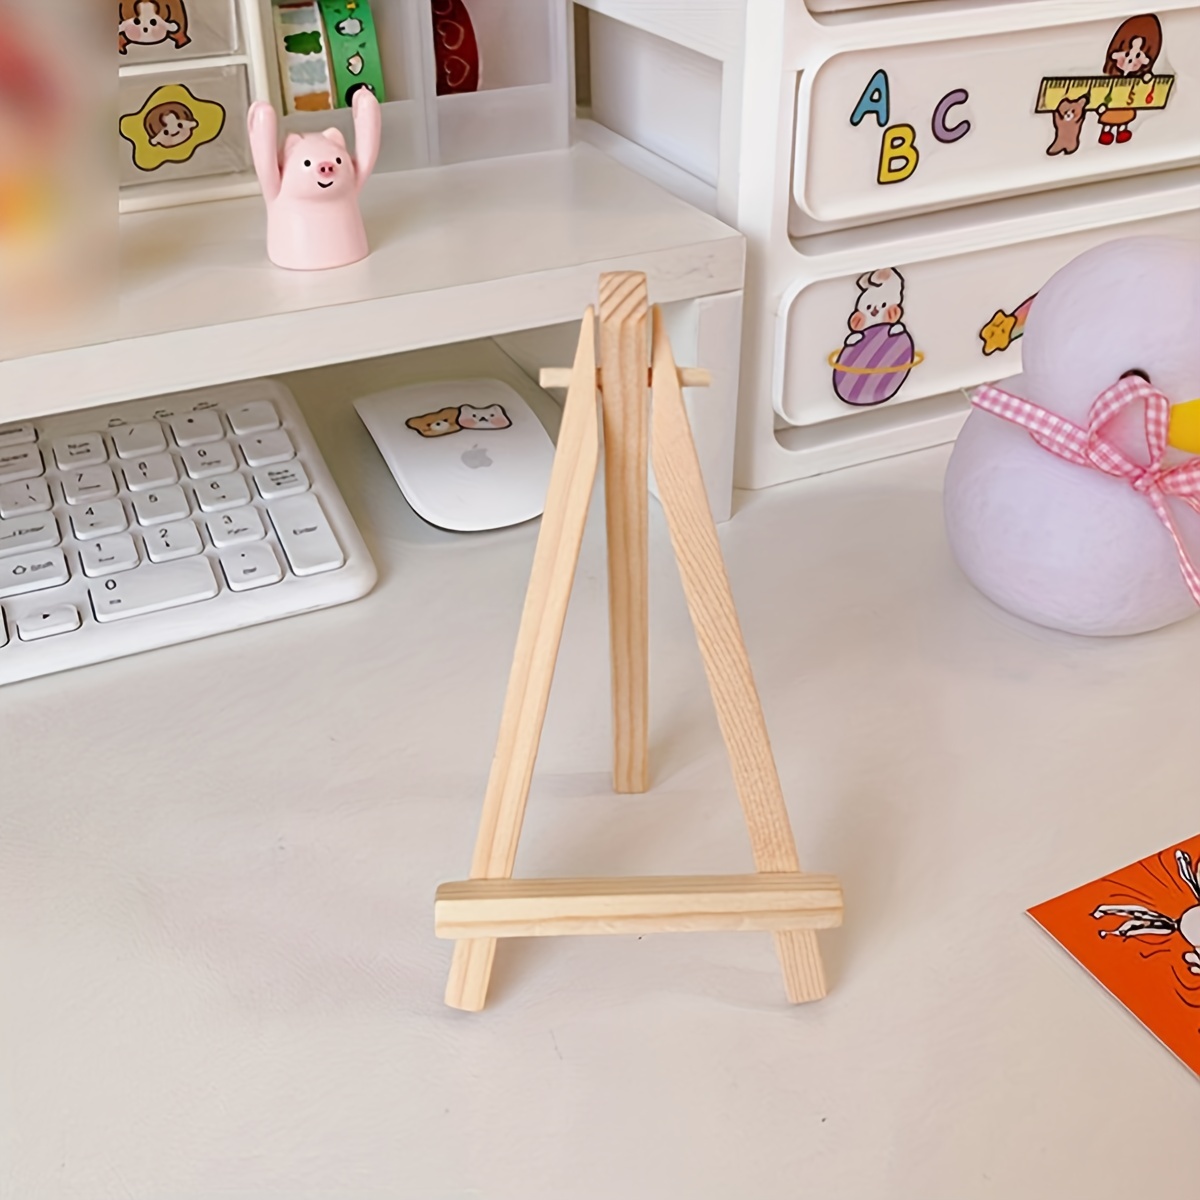 Mini Desktop Desktop Easel Wooden Folding Oil Painting Board - Temu